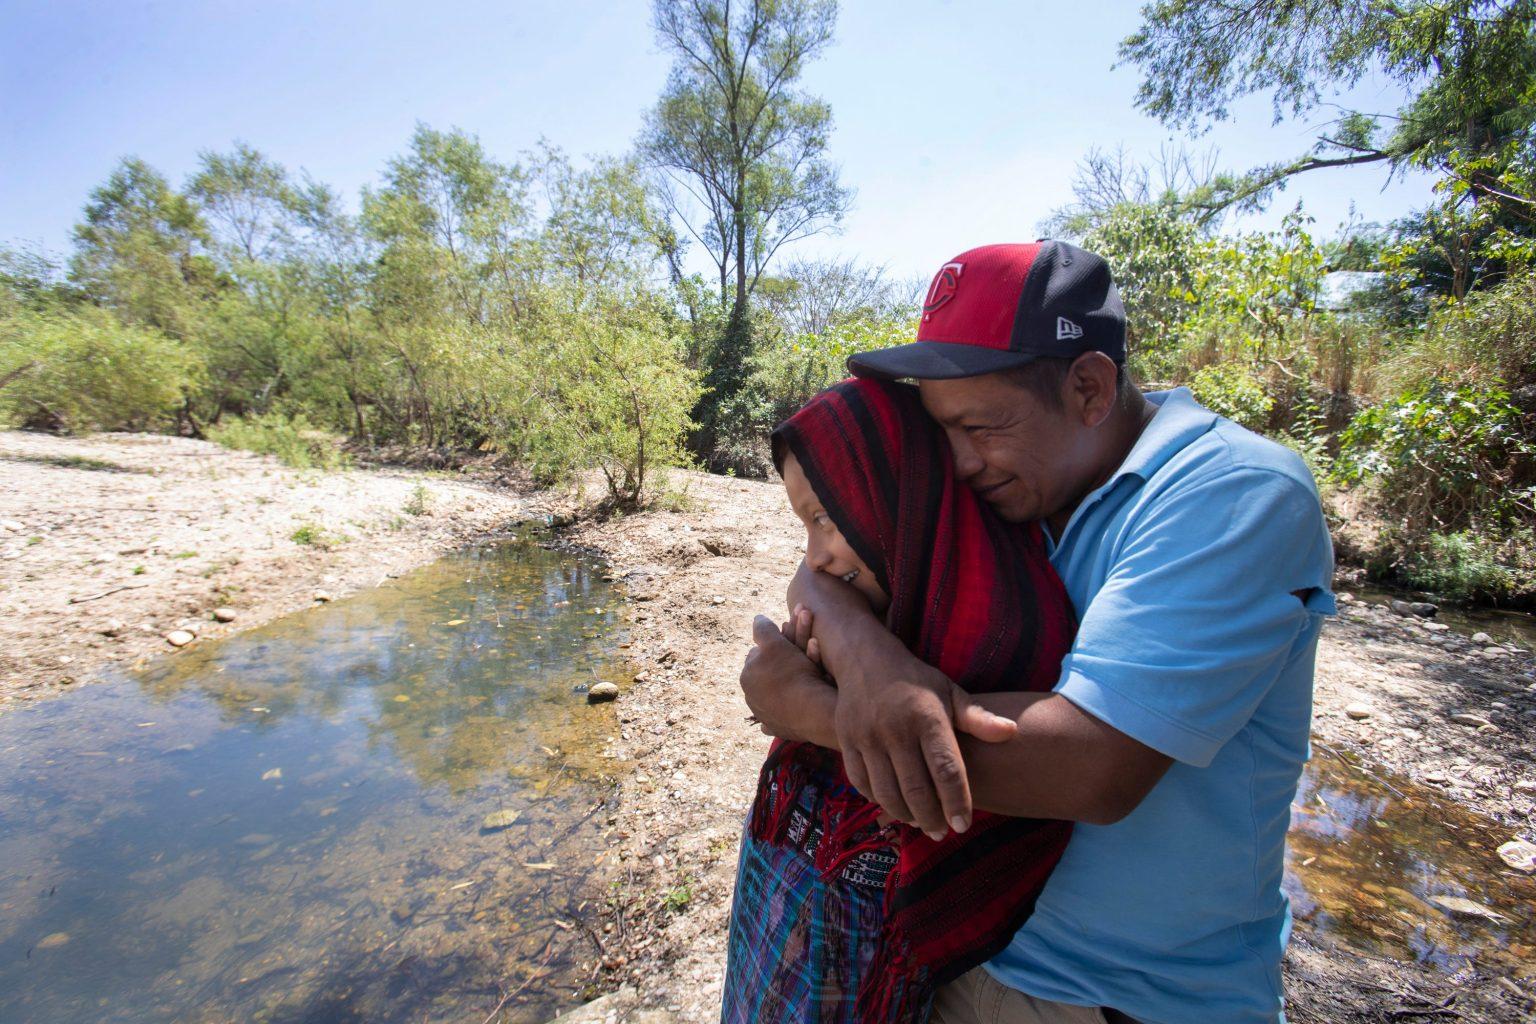 El cruce fallido en la frontera de EU se convierte en la pesadilla de un padre guatemalteco